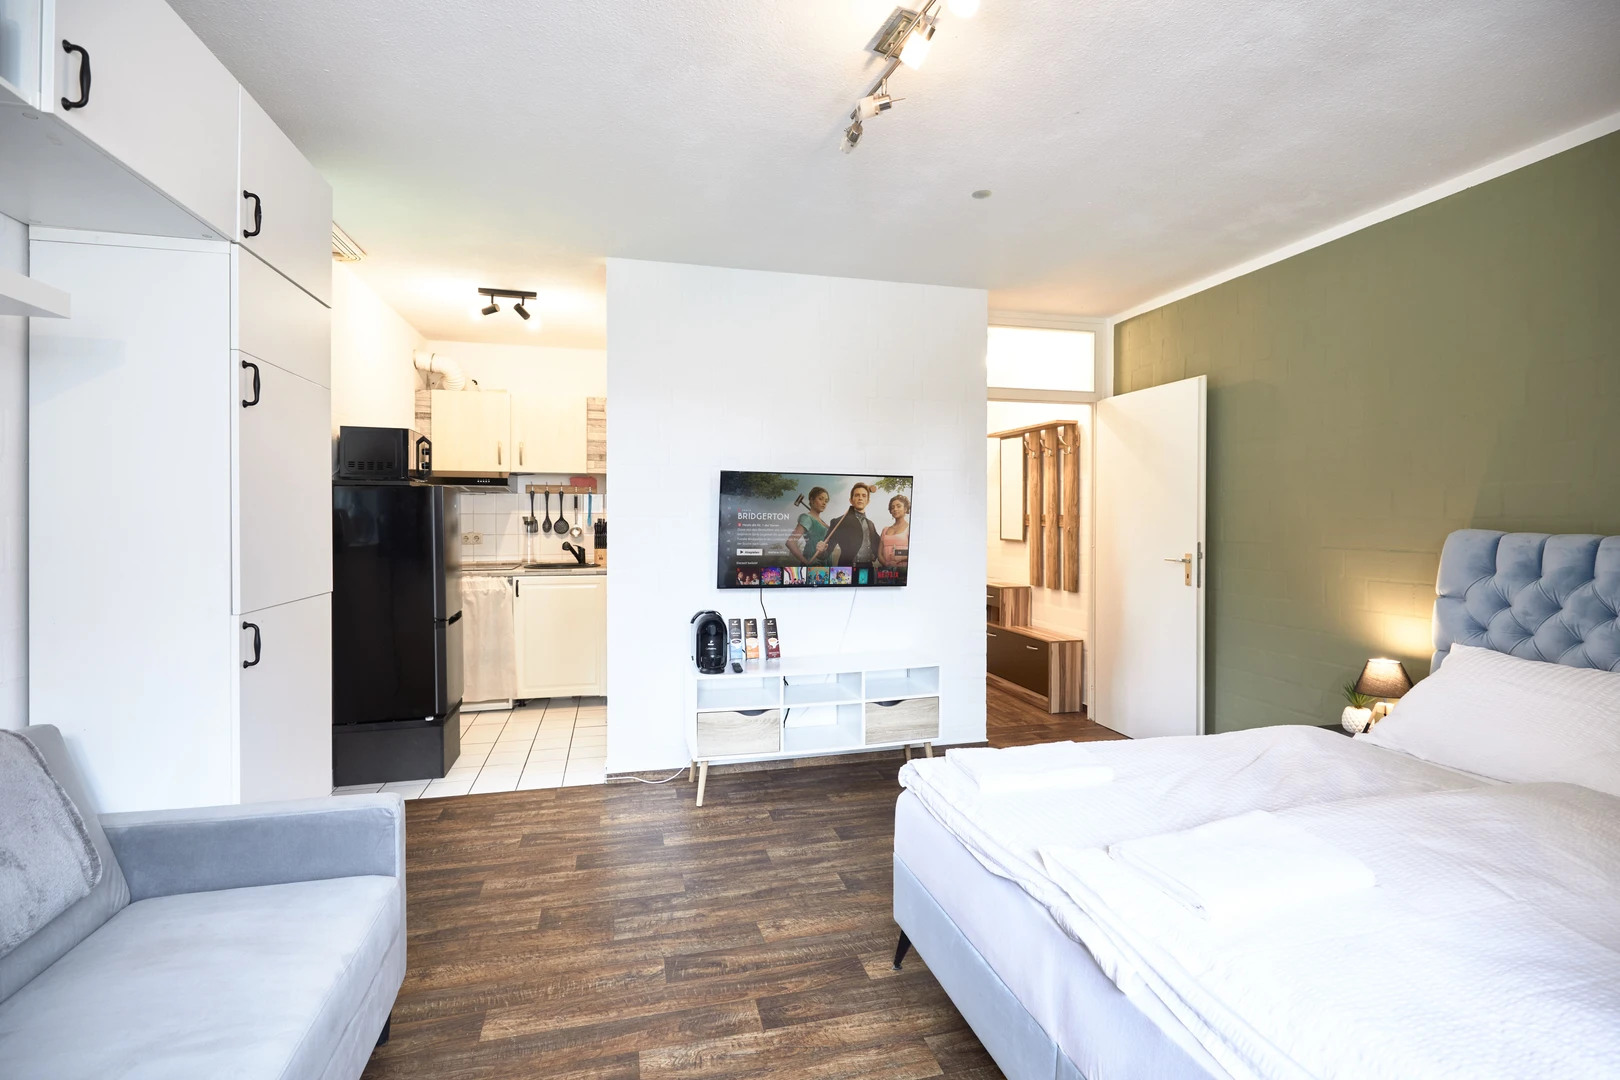 Alquiler de habitación en piso compartido en Bielefeld